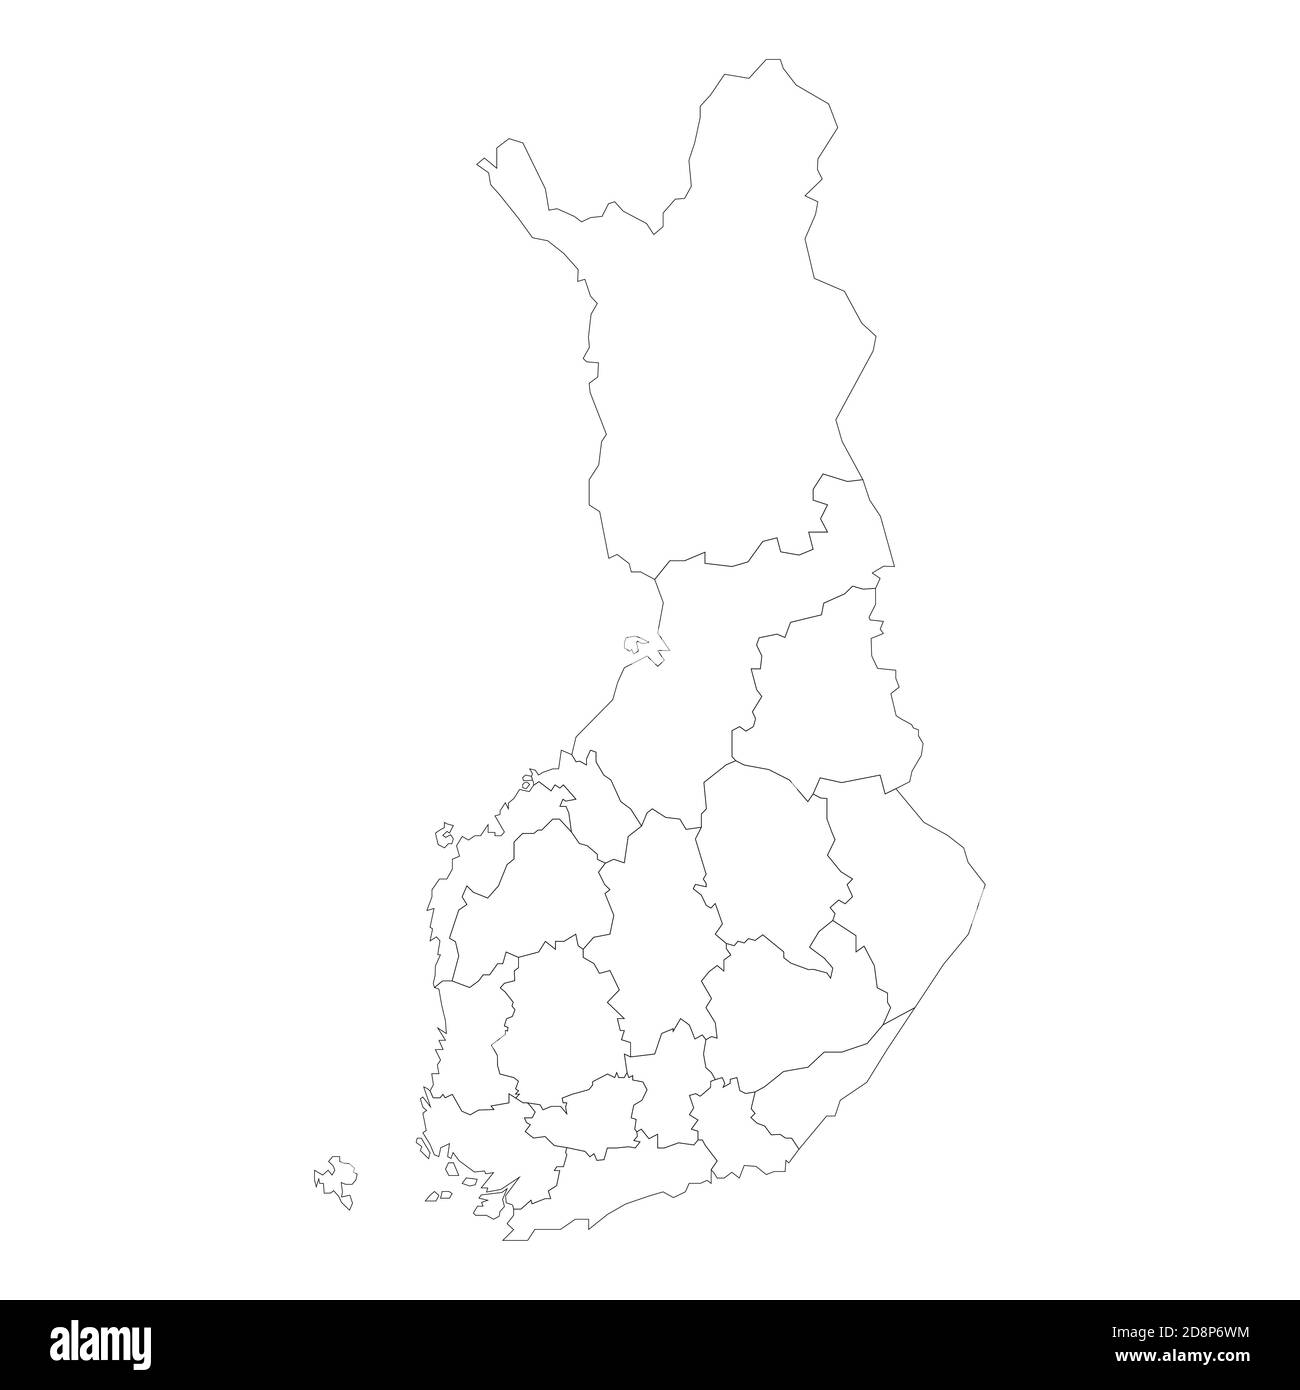 Mapa Político En Blanco De Finlandia Divisiones Administrativas Regiones Mapa Vectorial De 6863